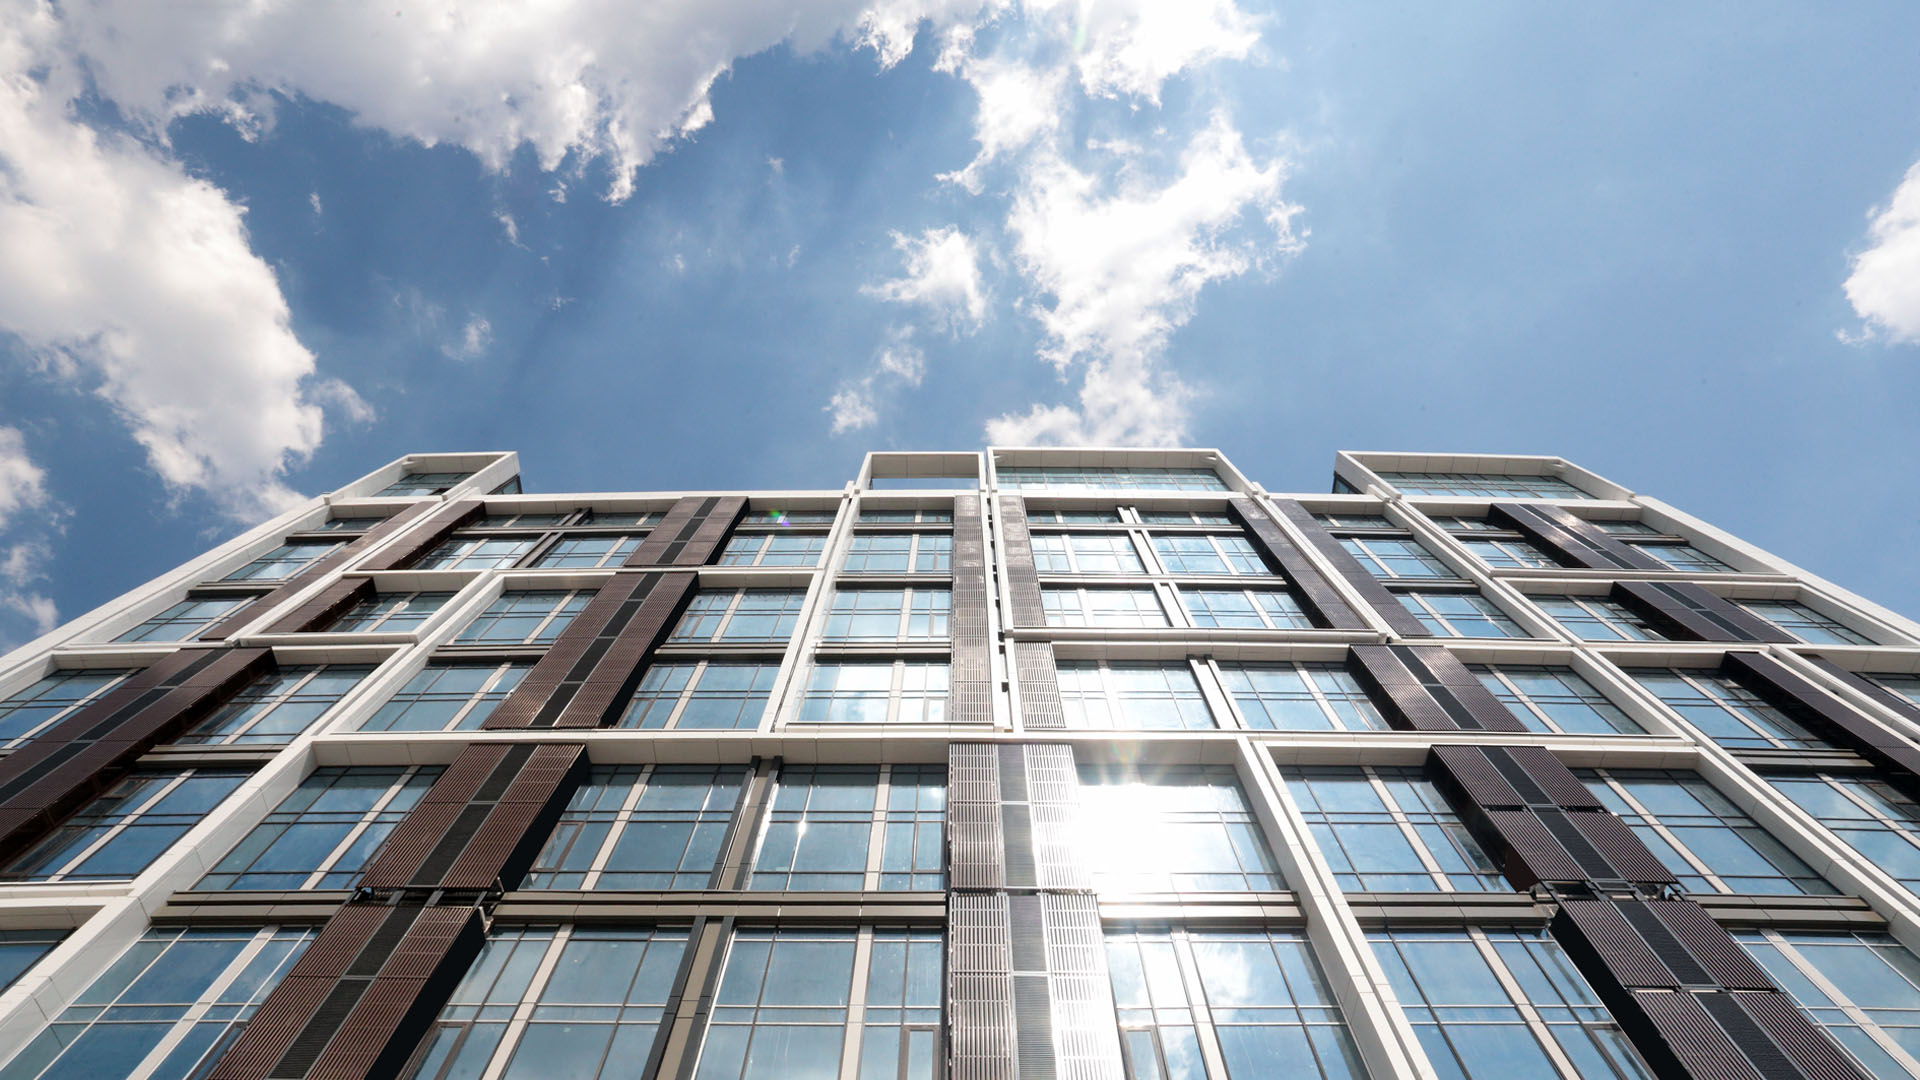 STONE HEDGE и Coldy Group торжественно открыли свой первый комплекс апартаментов - TriBeCa APARTMENTS 